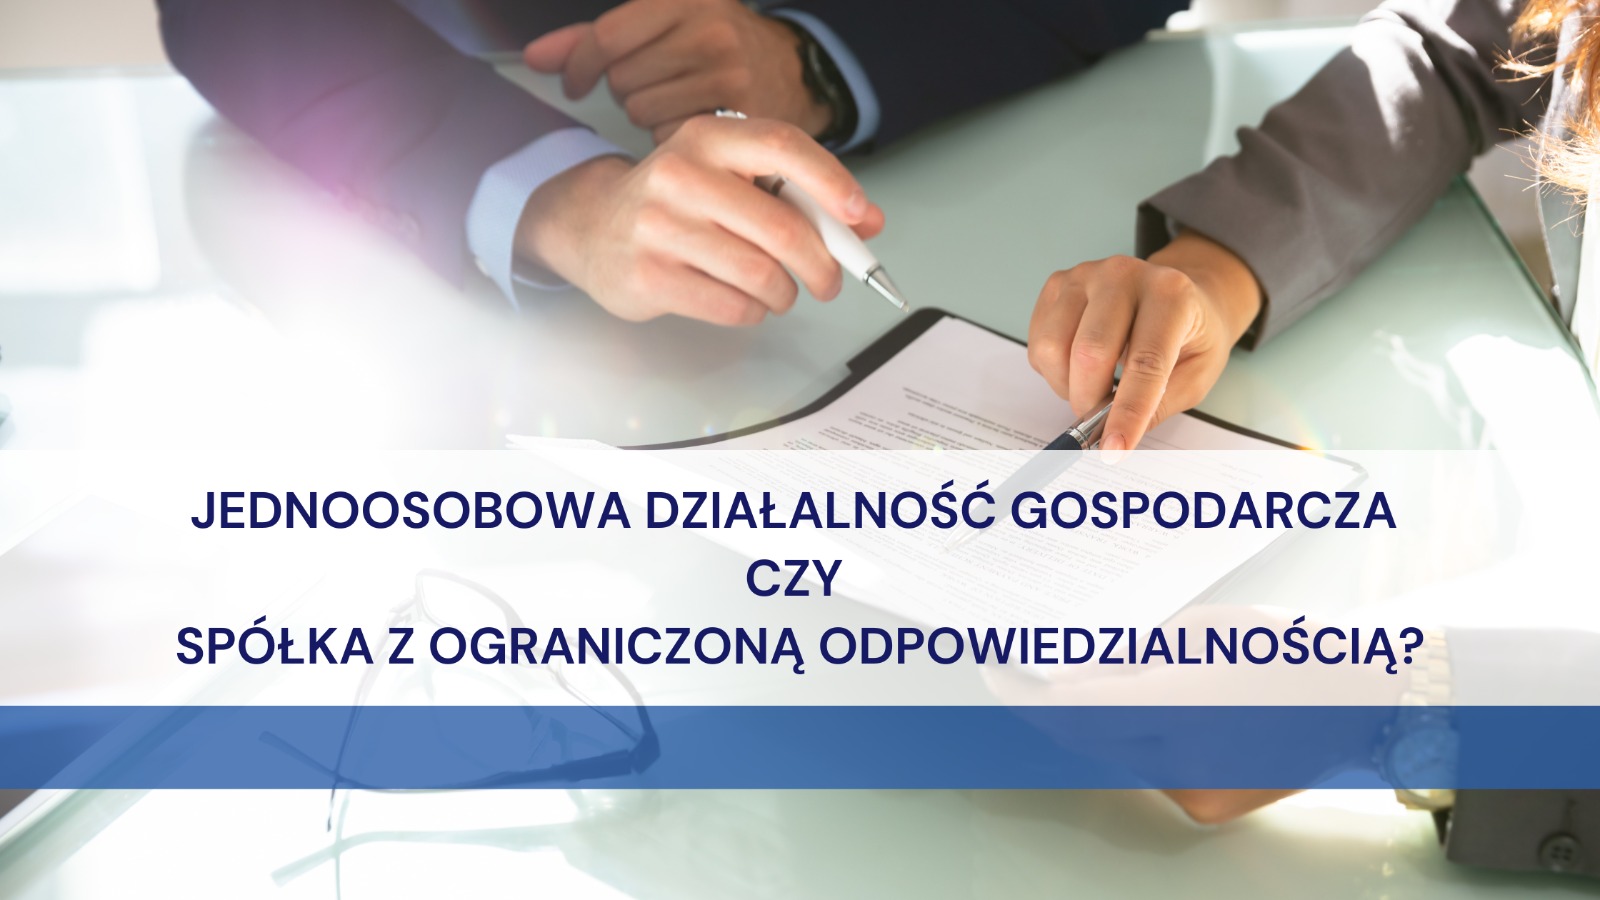 (Polski) Jednoosobowa działalność gospodarcza czy spółka z ograniczoną odpowiedzialnością?